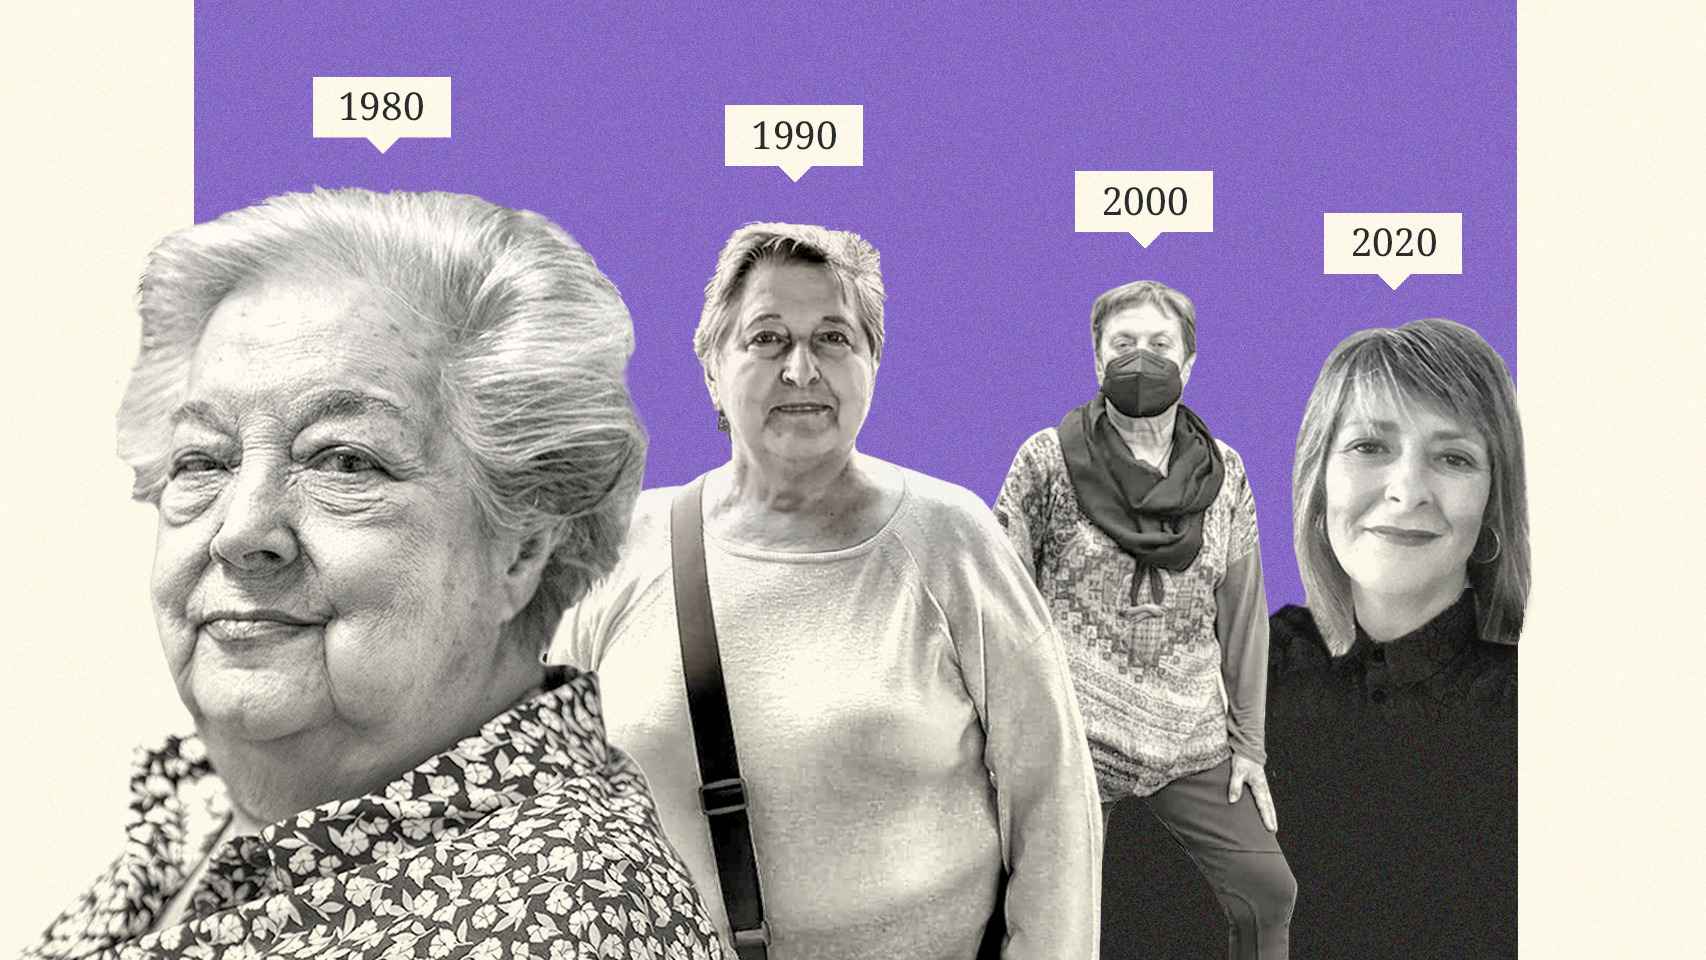 Ana María, Mari Ángeles, Rosa y Helena. Cuatro mujeres que se divorciaron en distintas décadas.